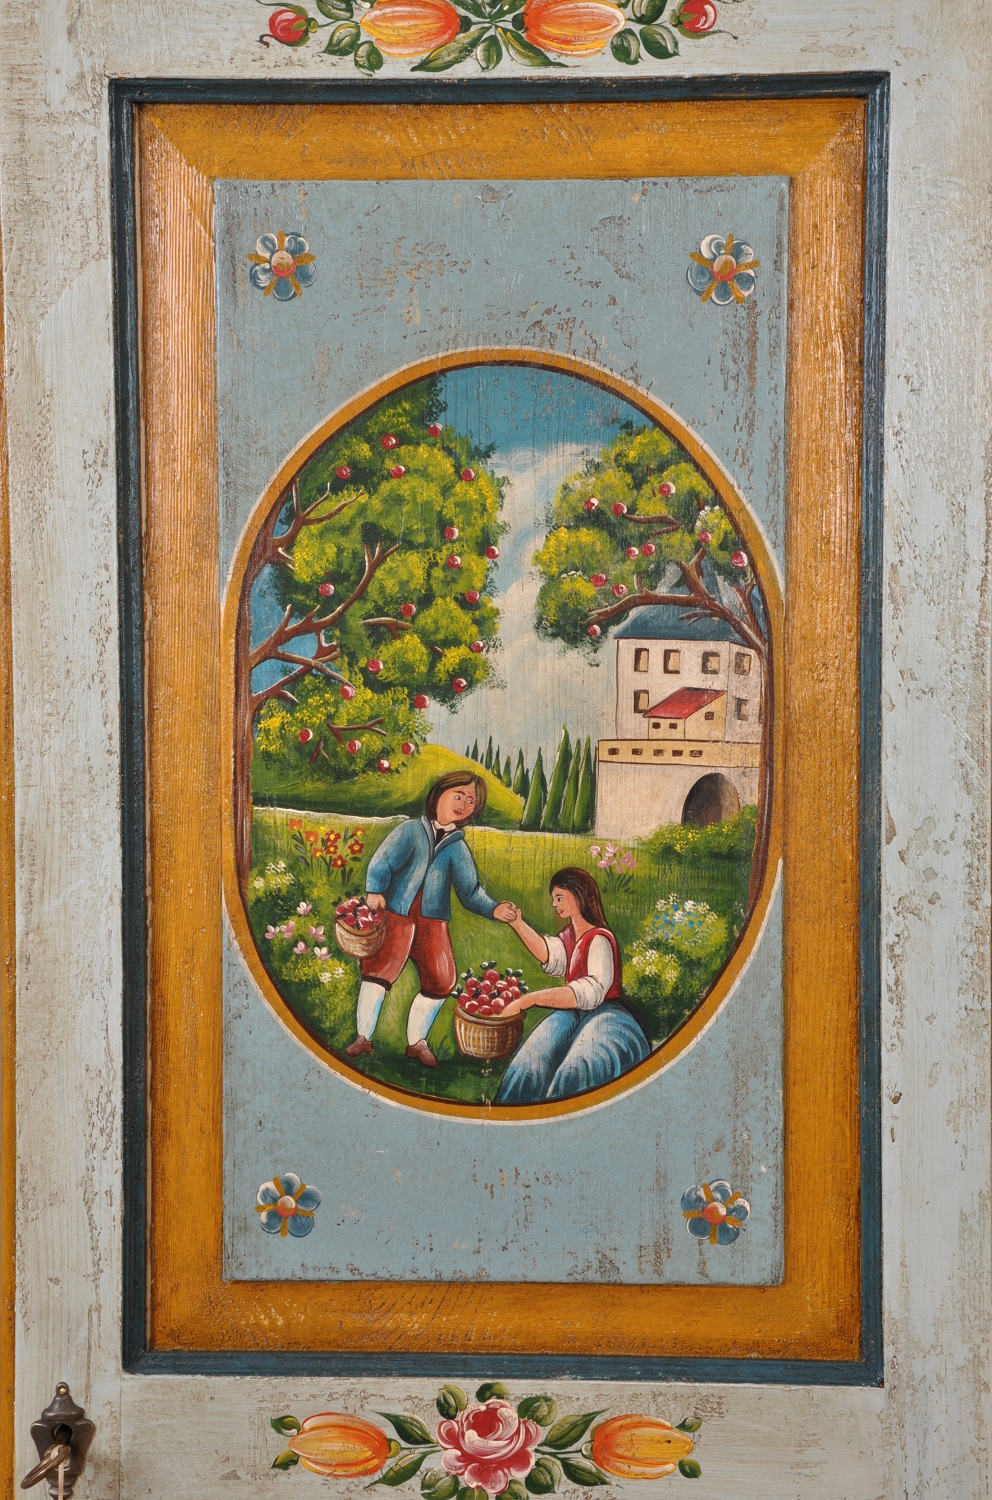 decorazione con scene di vita montana riprodotte a mano in stile classico barocco tirolese e riproducibili su misura angolare made in italy